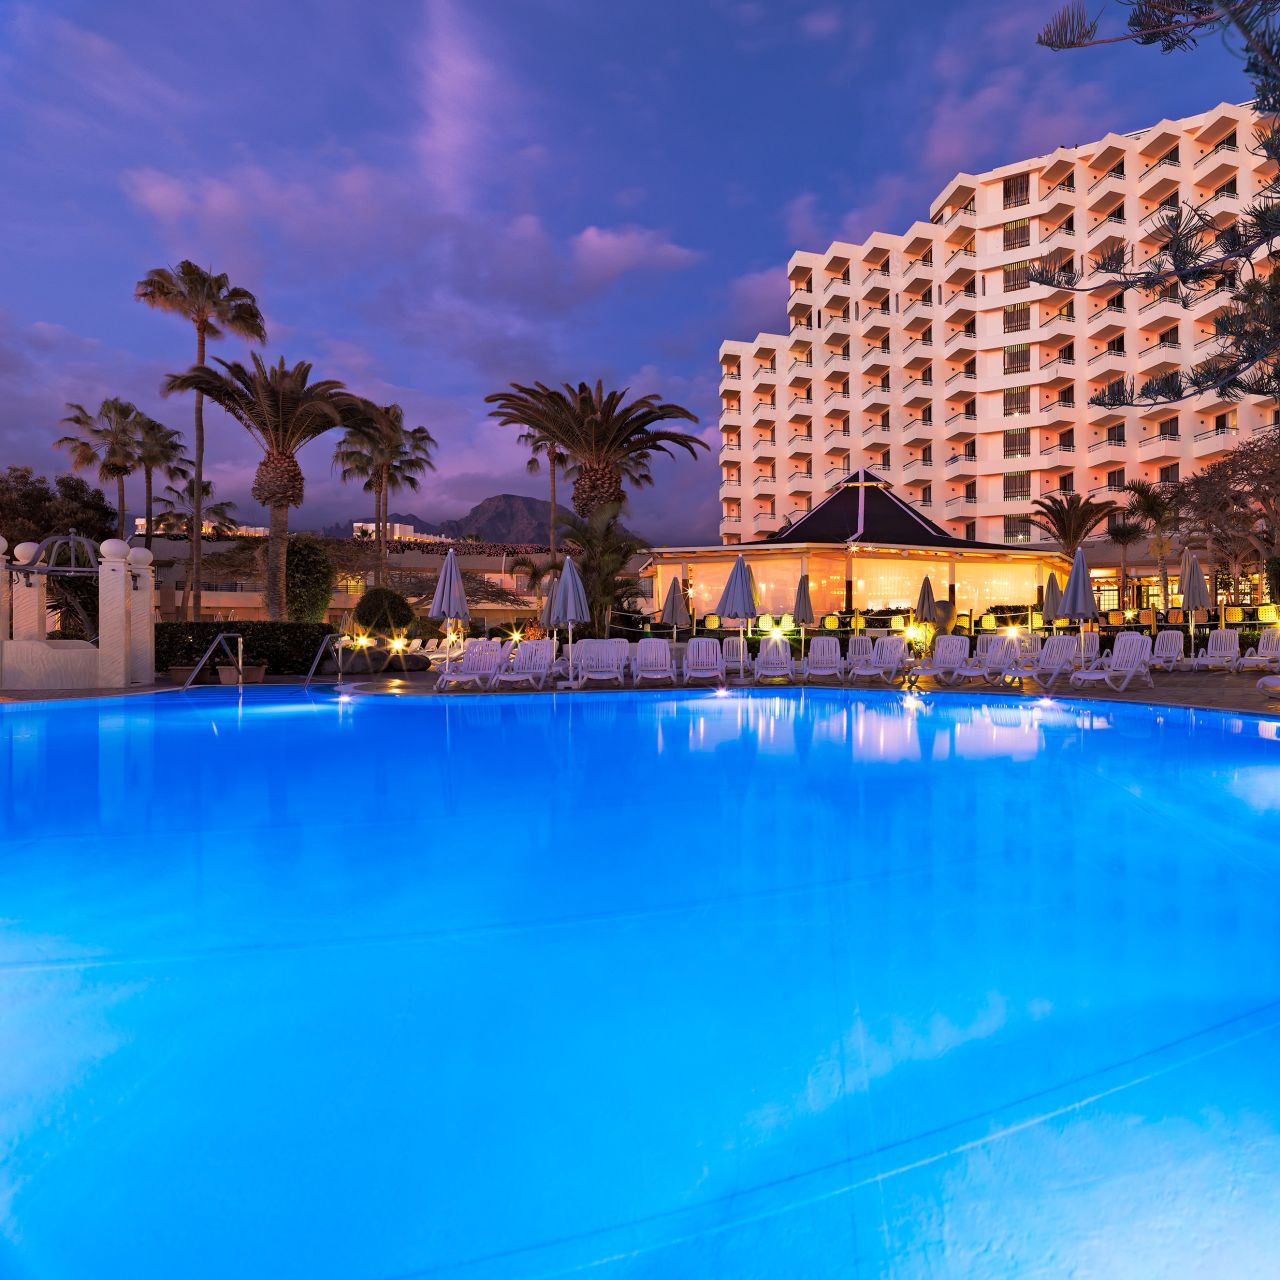 Hotel H10 Las Palmeras - îles Canaries - HOTEL INFO